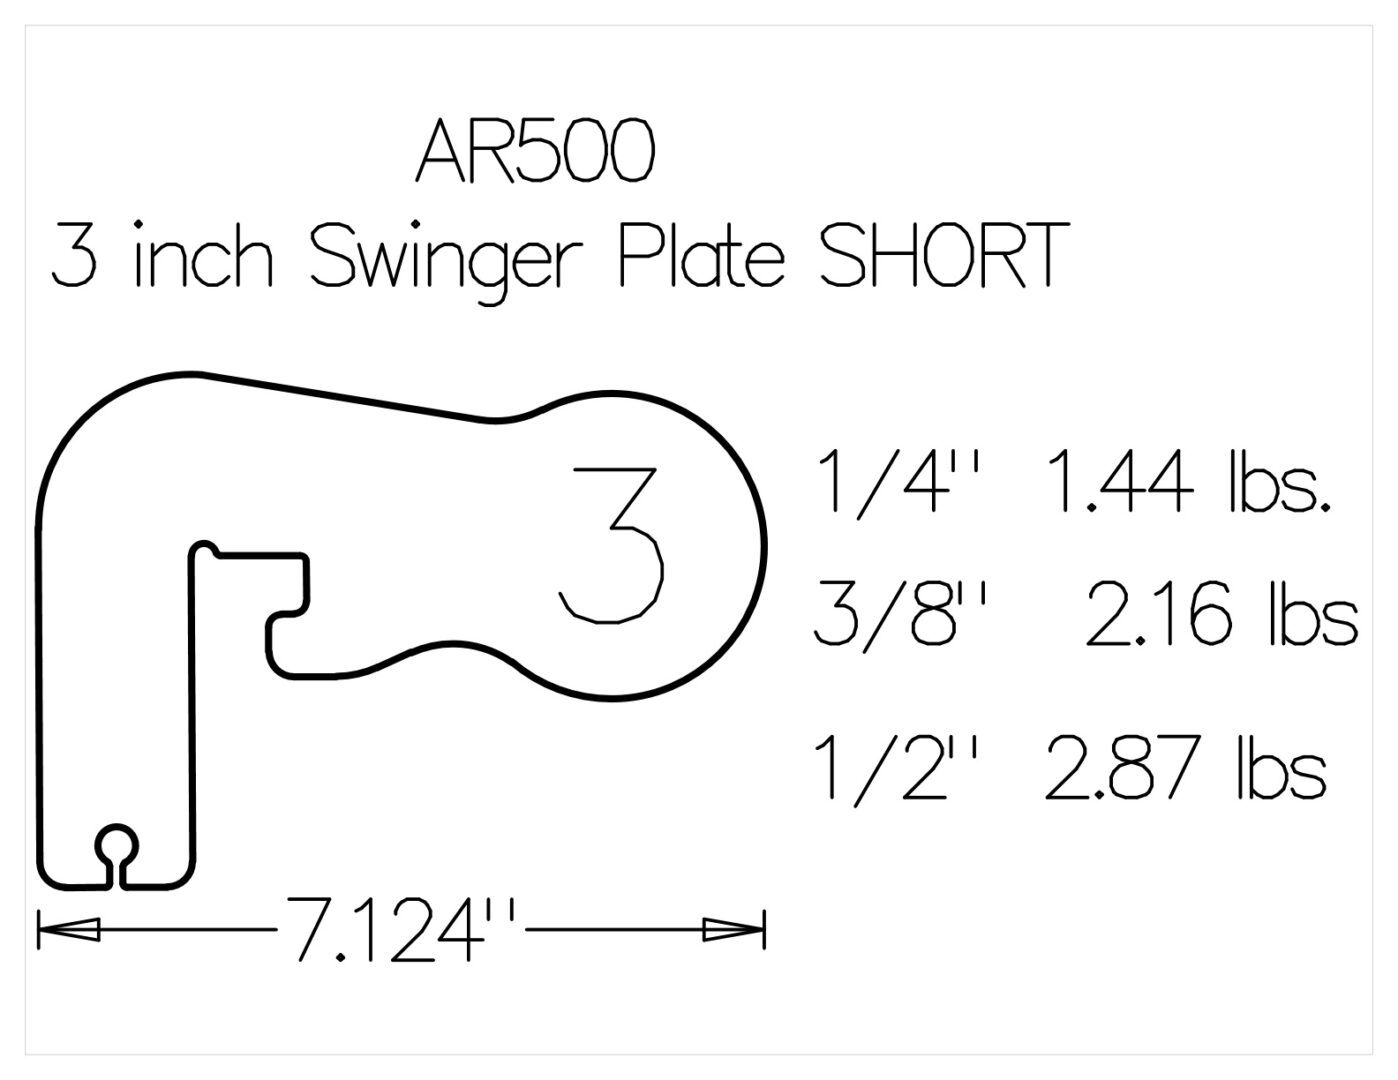 3 inch swinger plate short